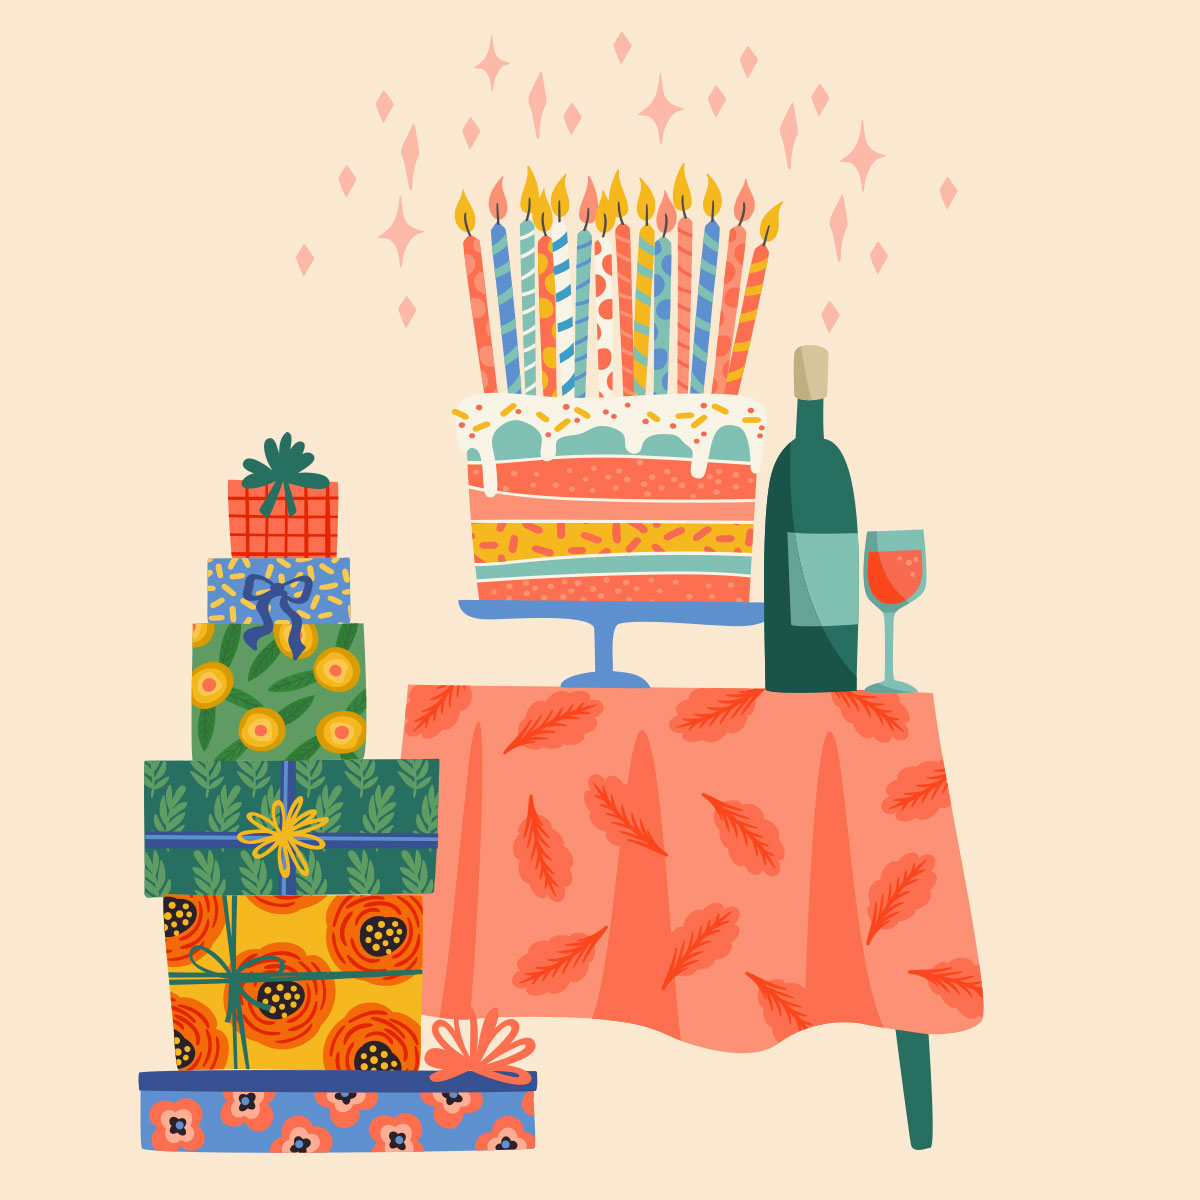 Открытка с днем рождения мужчине без текста с тортом, подарками и бутылкой вина.